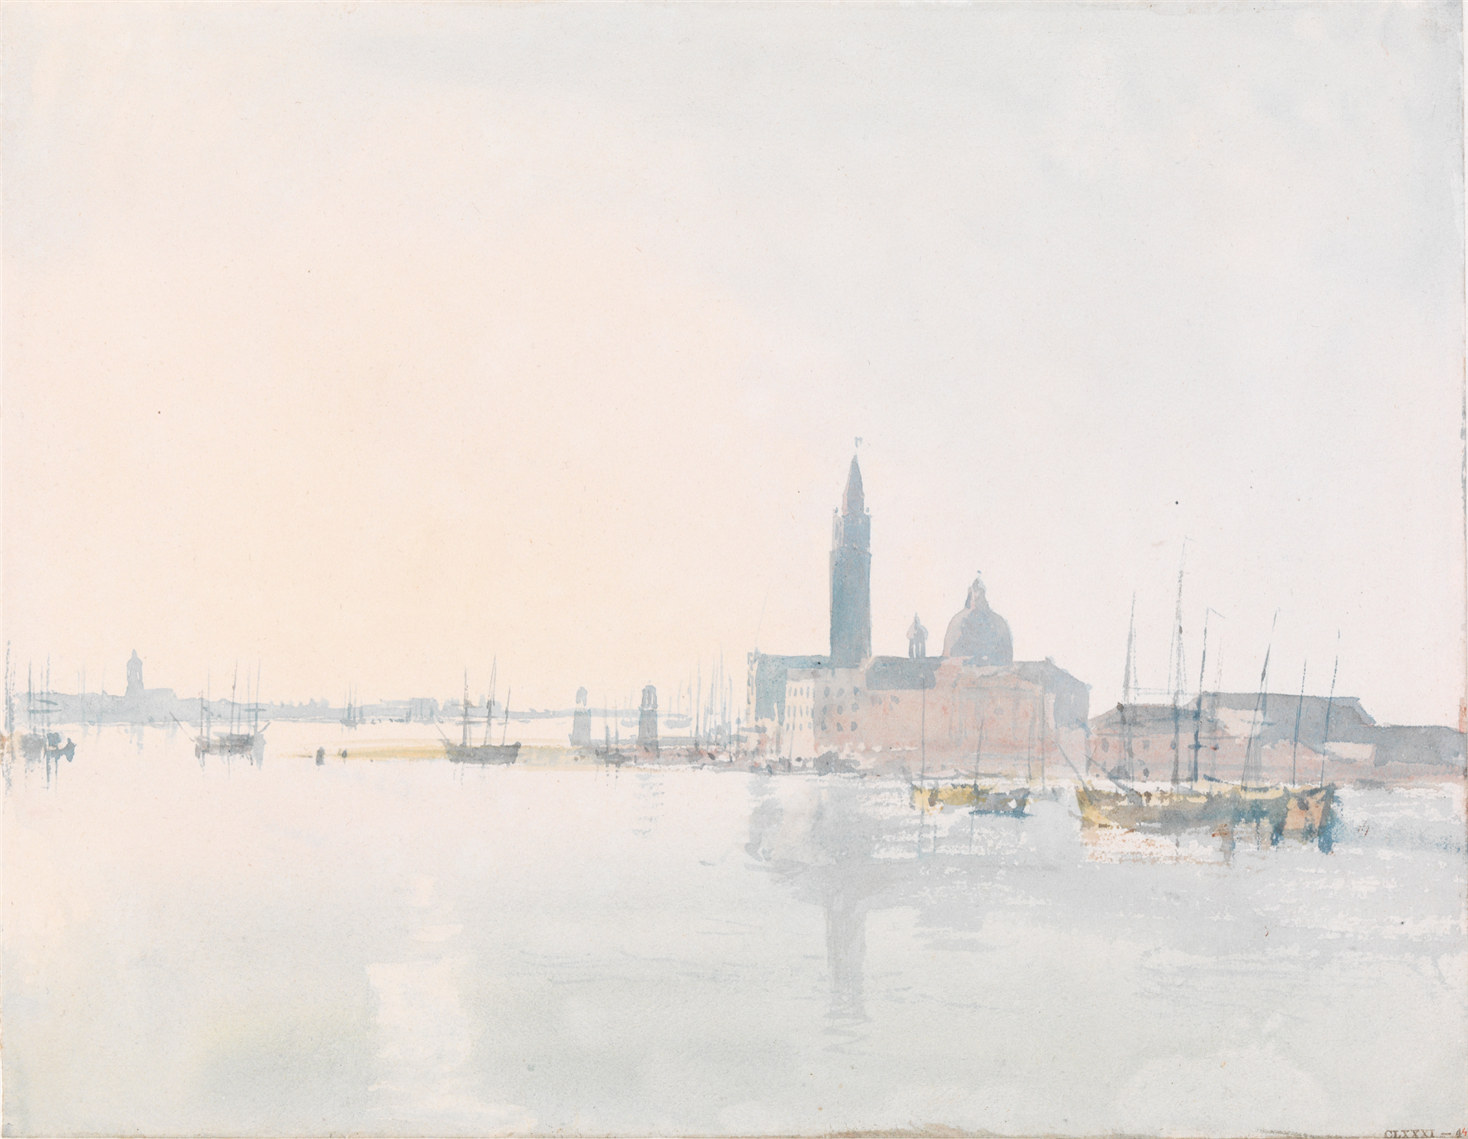 Venise San Giorgio Maggiore, tôt le matin, 1819, aquarelle sur papier, 22,3 x 28,7 cm Tate, accepté par la nation dans le cadre du legs Turner 1856, Photo © Tate